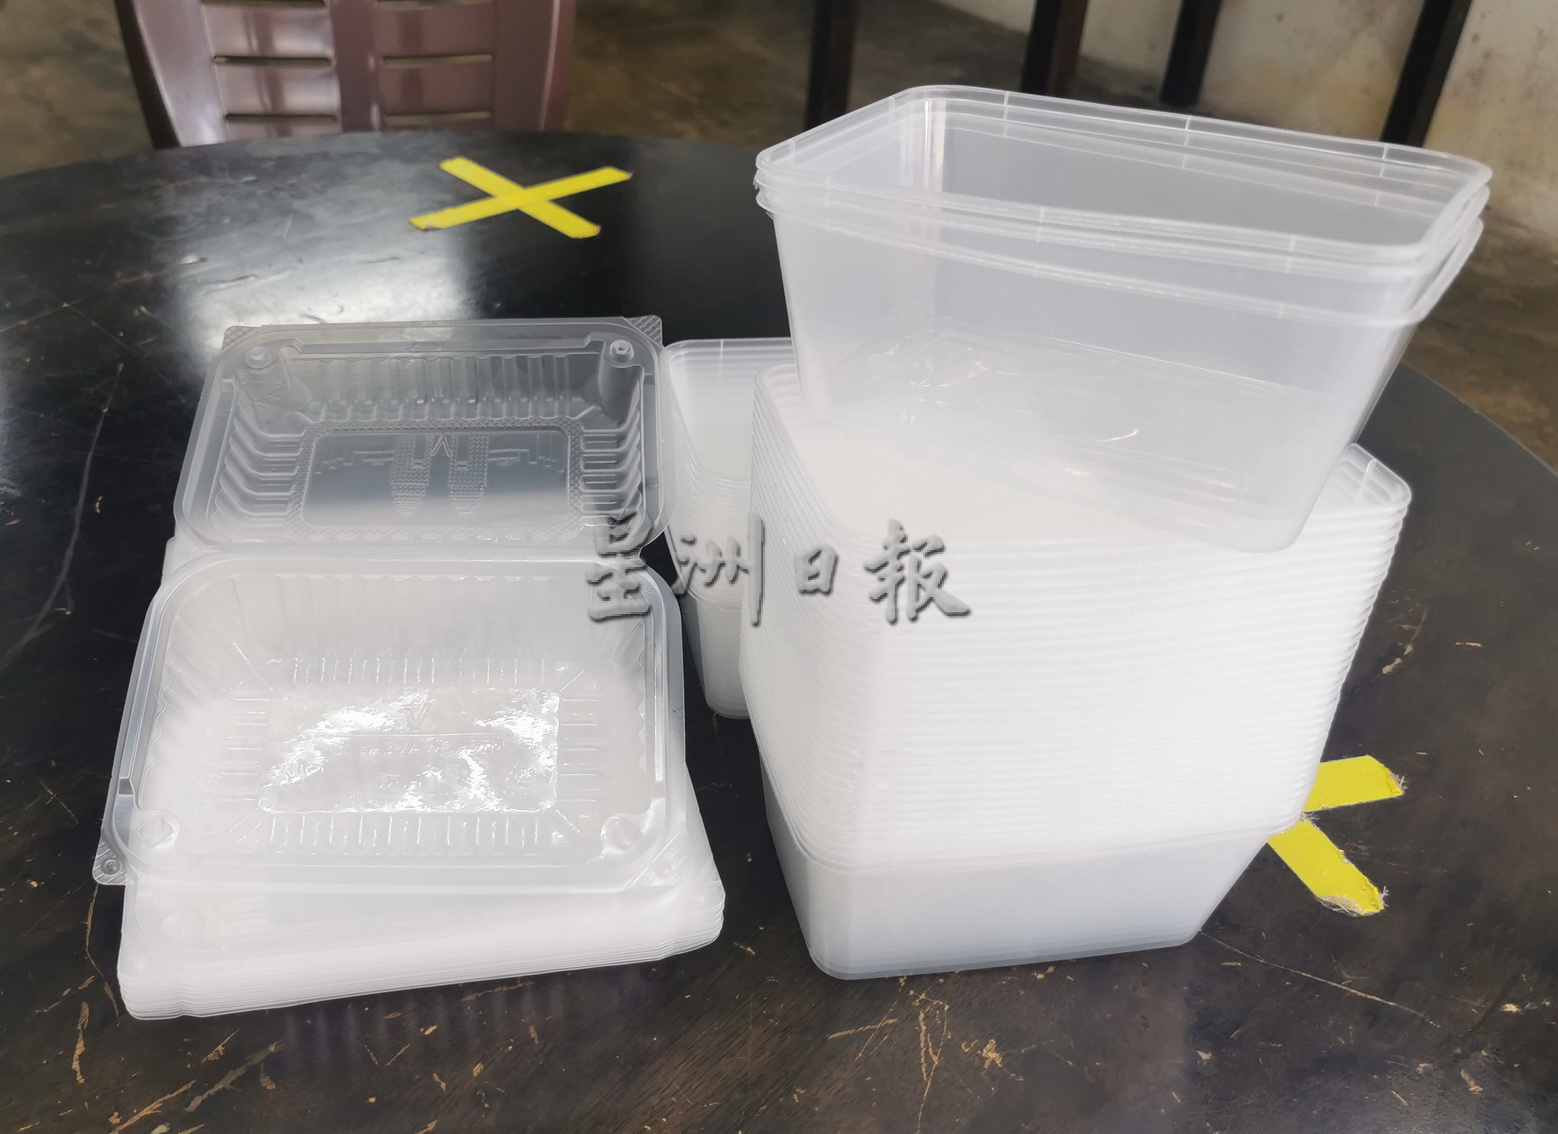 东：淡属咖啡商公会响应环保及配合政府禁用保丽龙饭盒措施，派发环保塑料饭盒于会员。